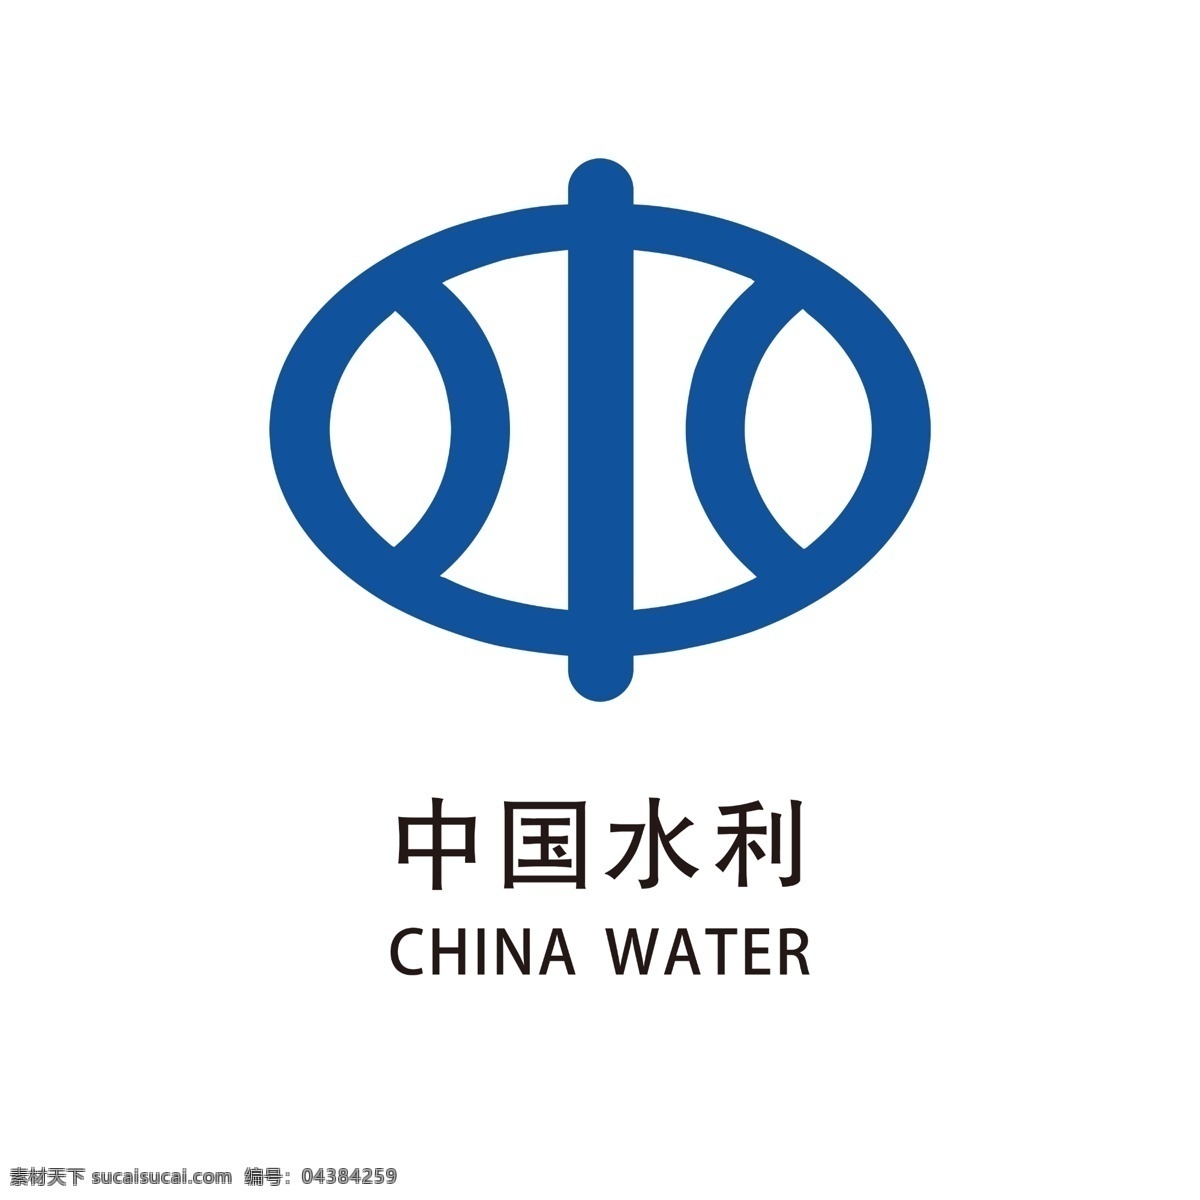 中国水利图片 水利局 logo 水利局标志 中国水利 中国水利标志 中国 水利